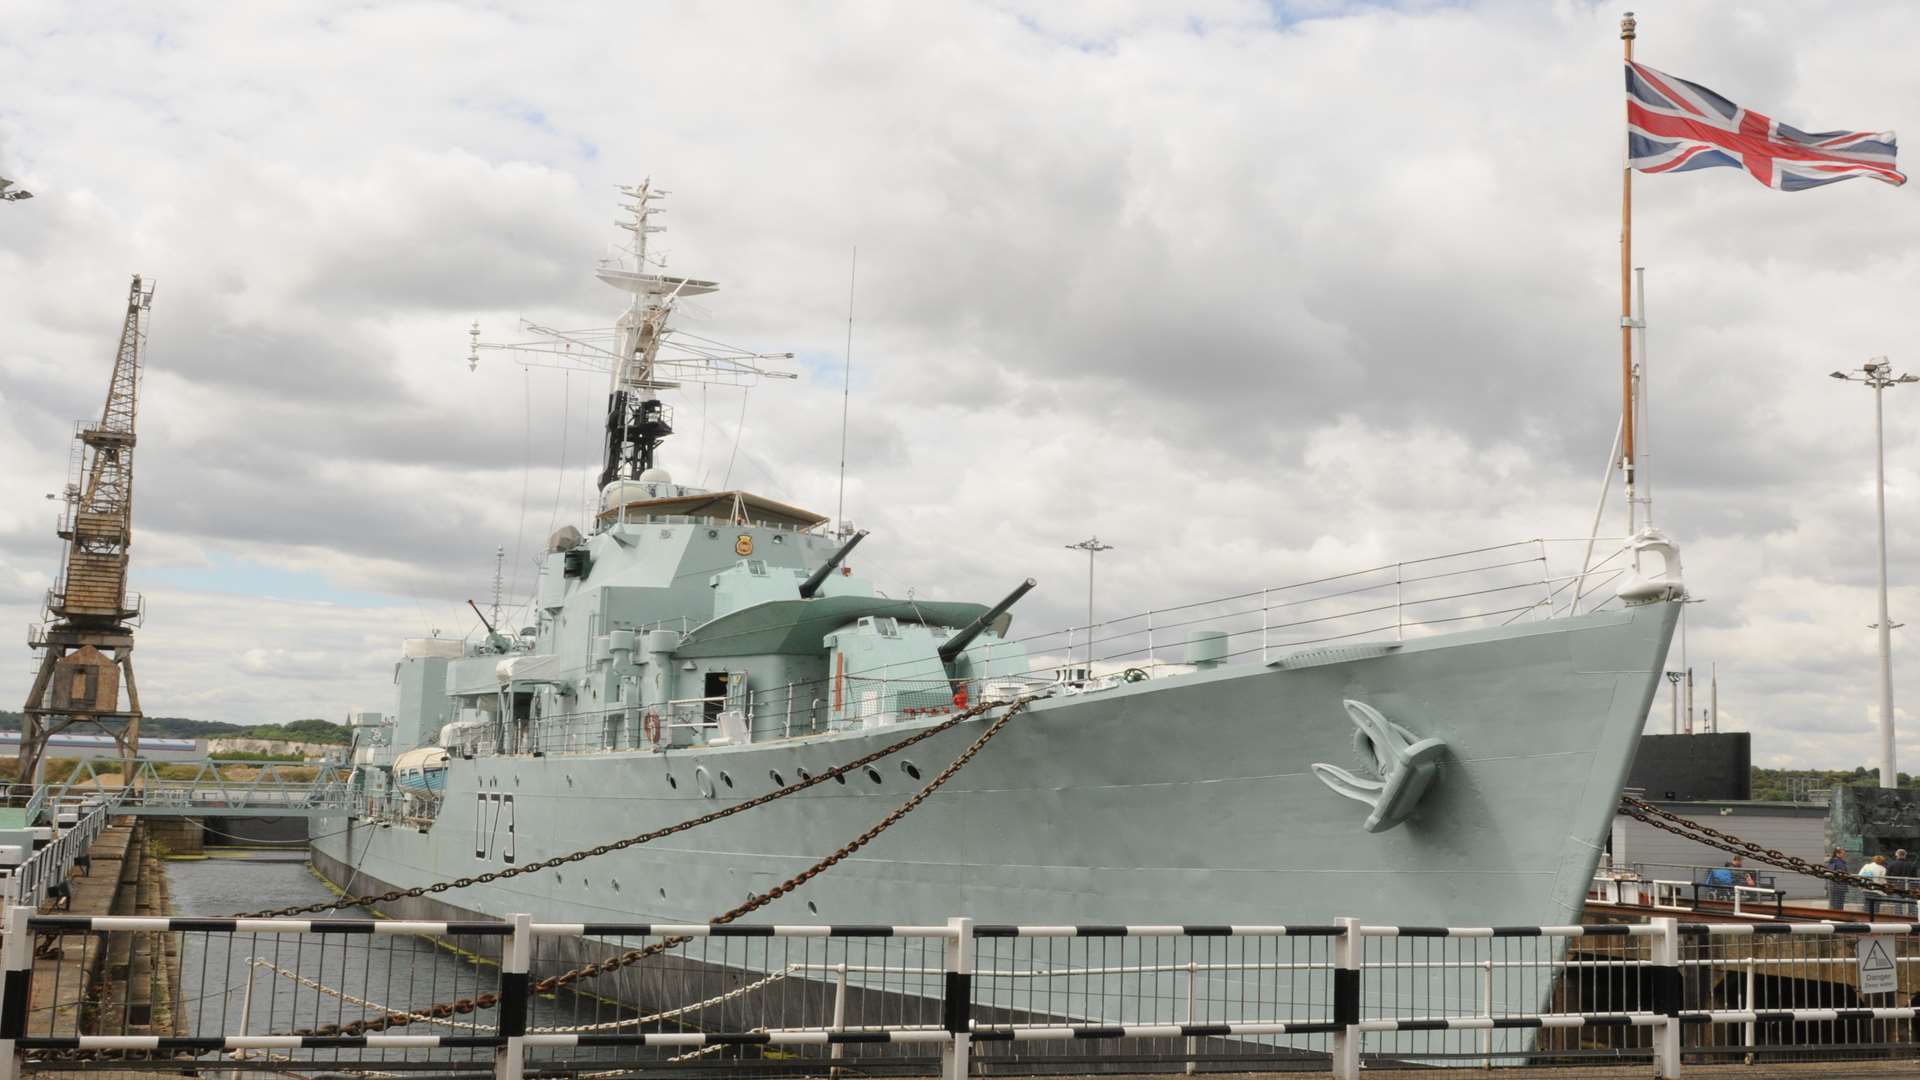 A Royal Naval ship at Chatham Historic Dockyard